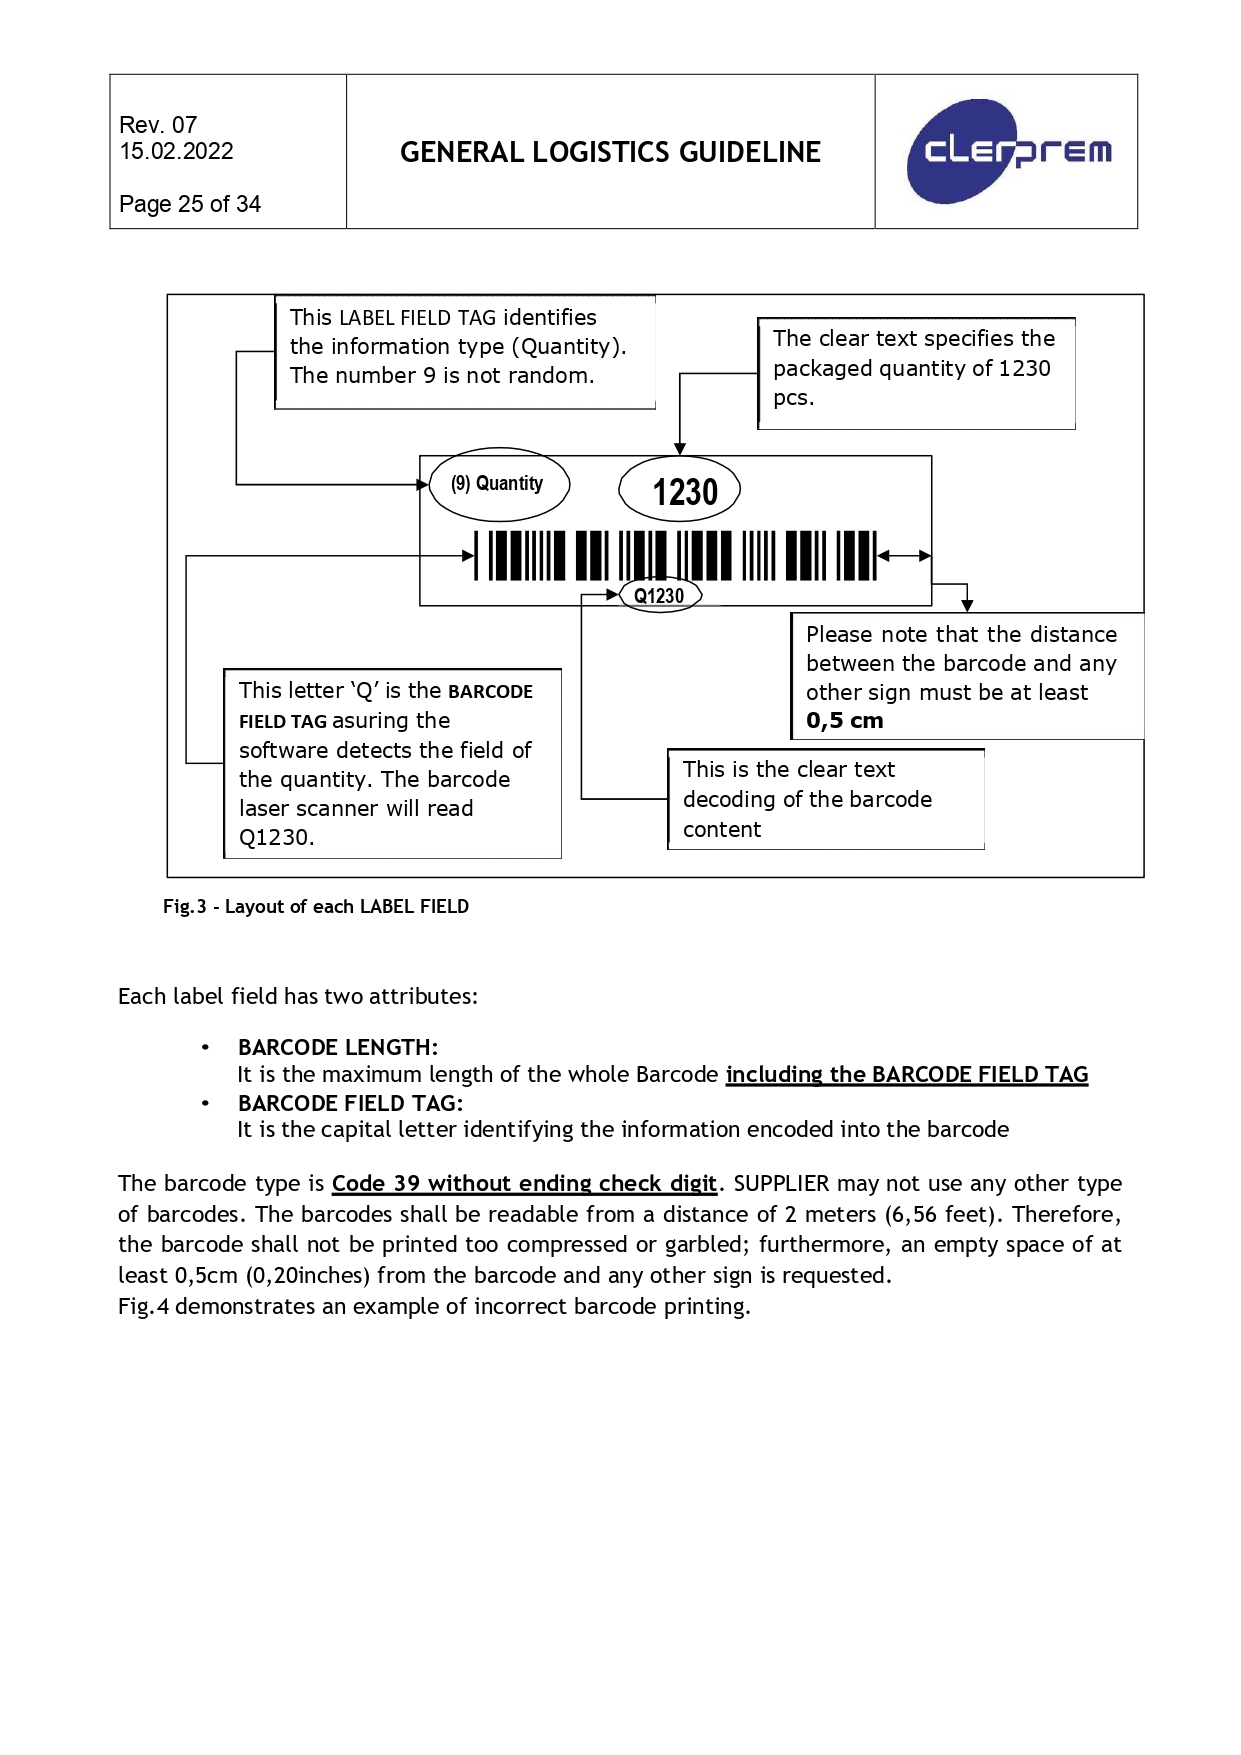 General Logistics Guideline Clerprem SpA Rev 08_page-0026